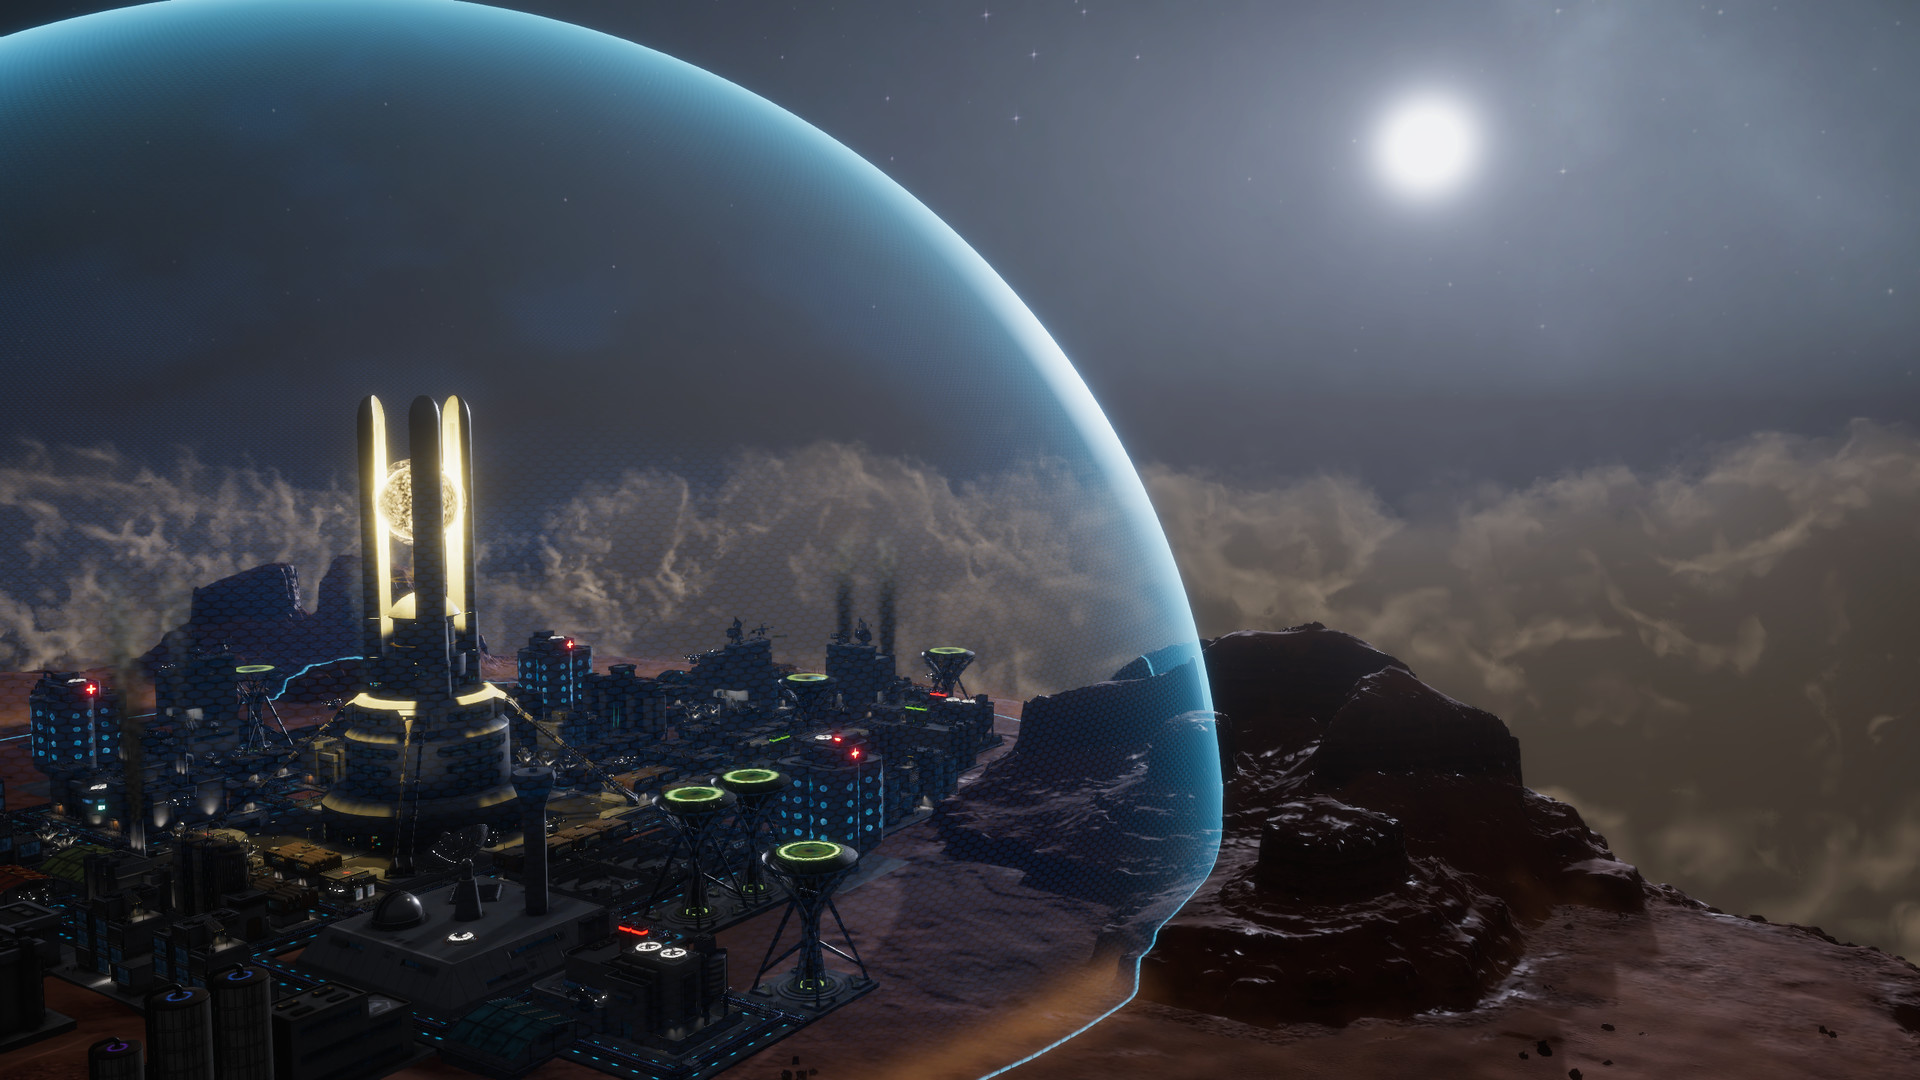 Sphere: Flying Cities Steam CD Key 4.72 $